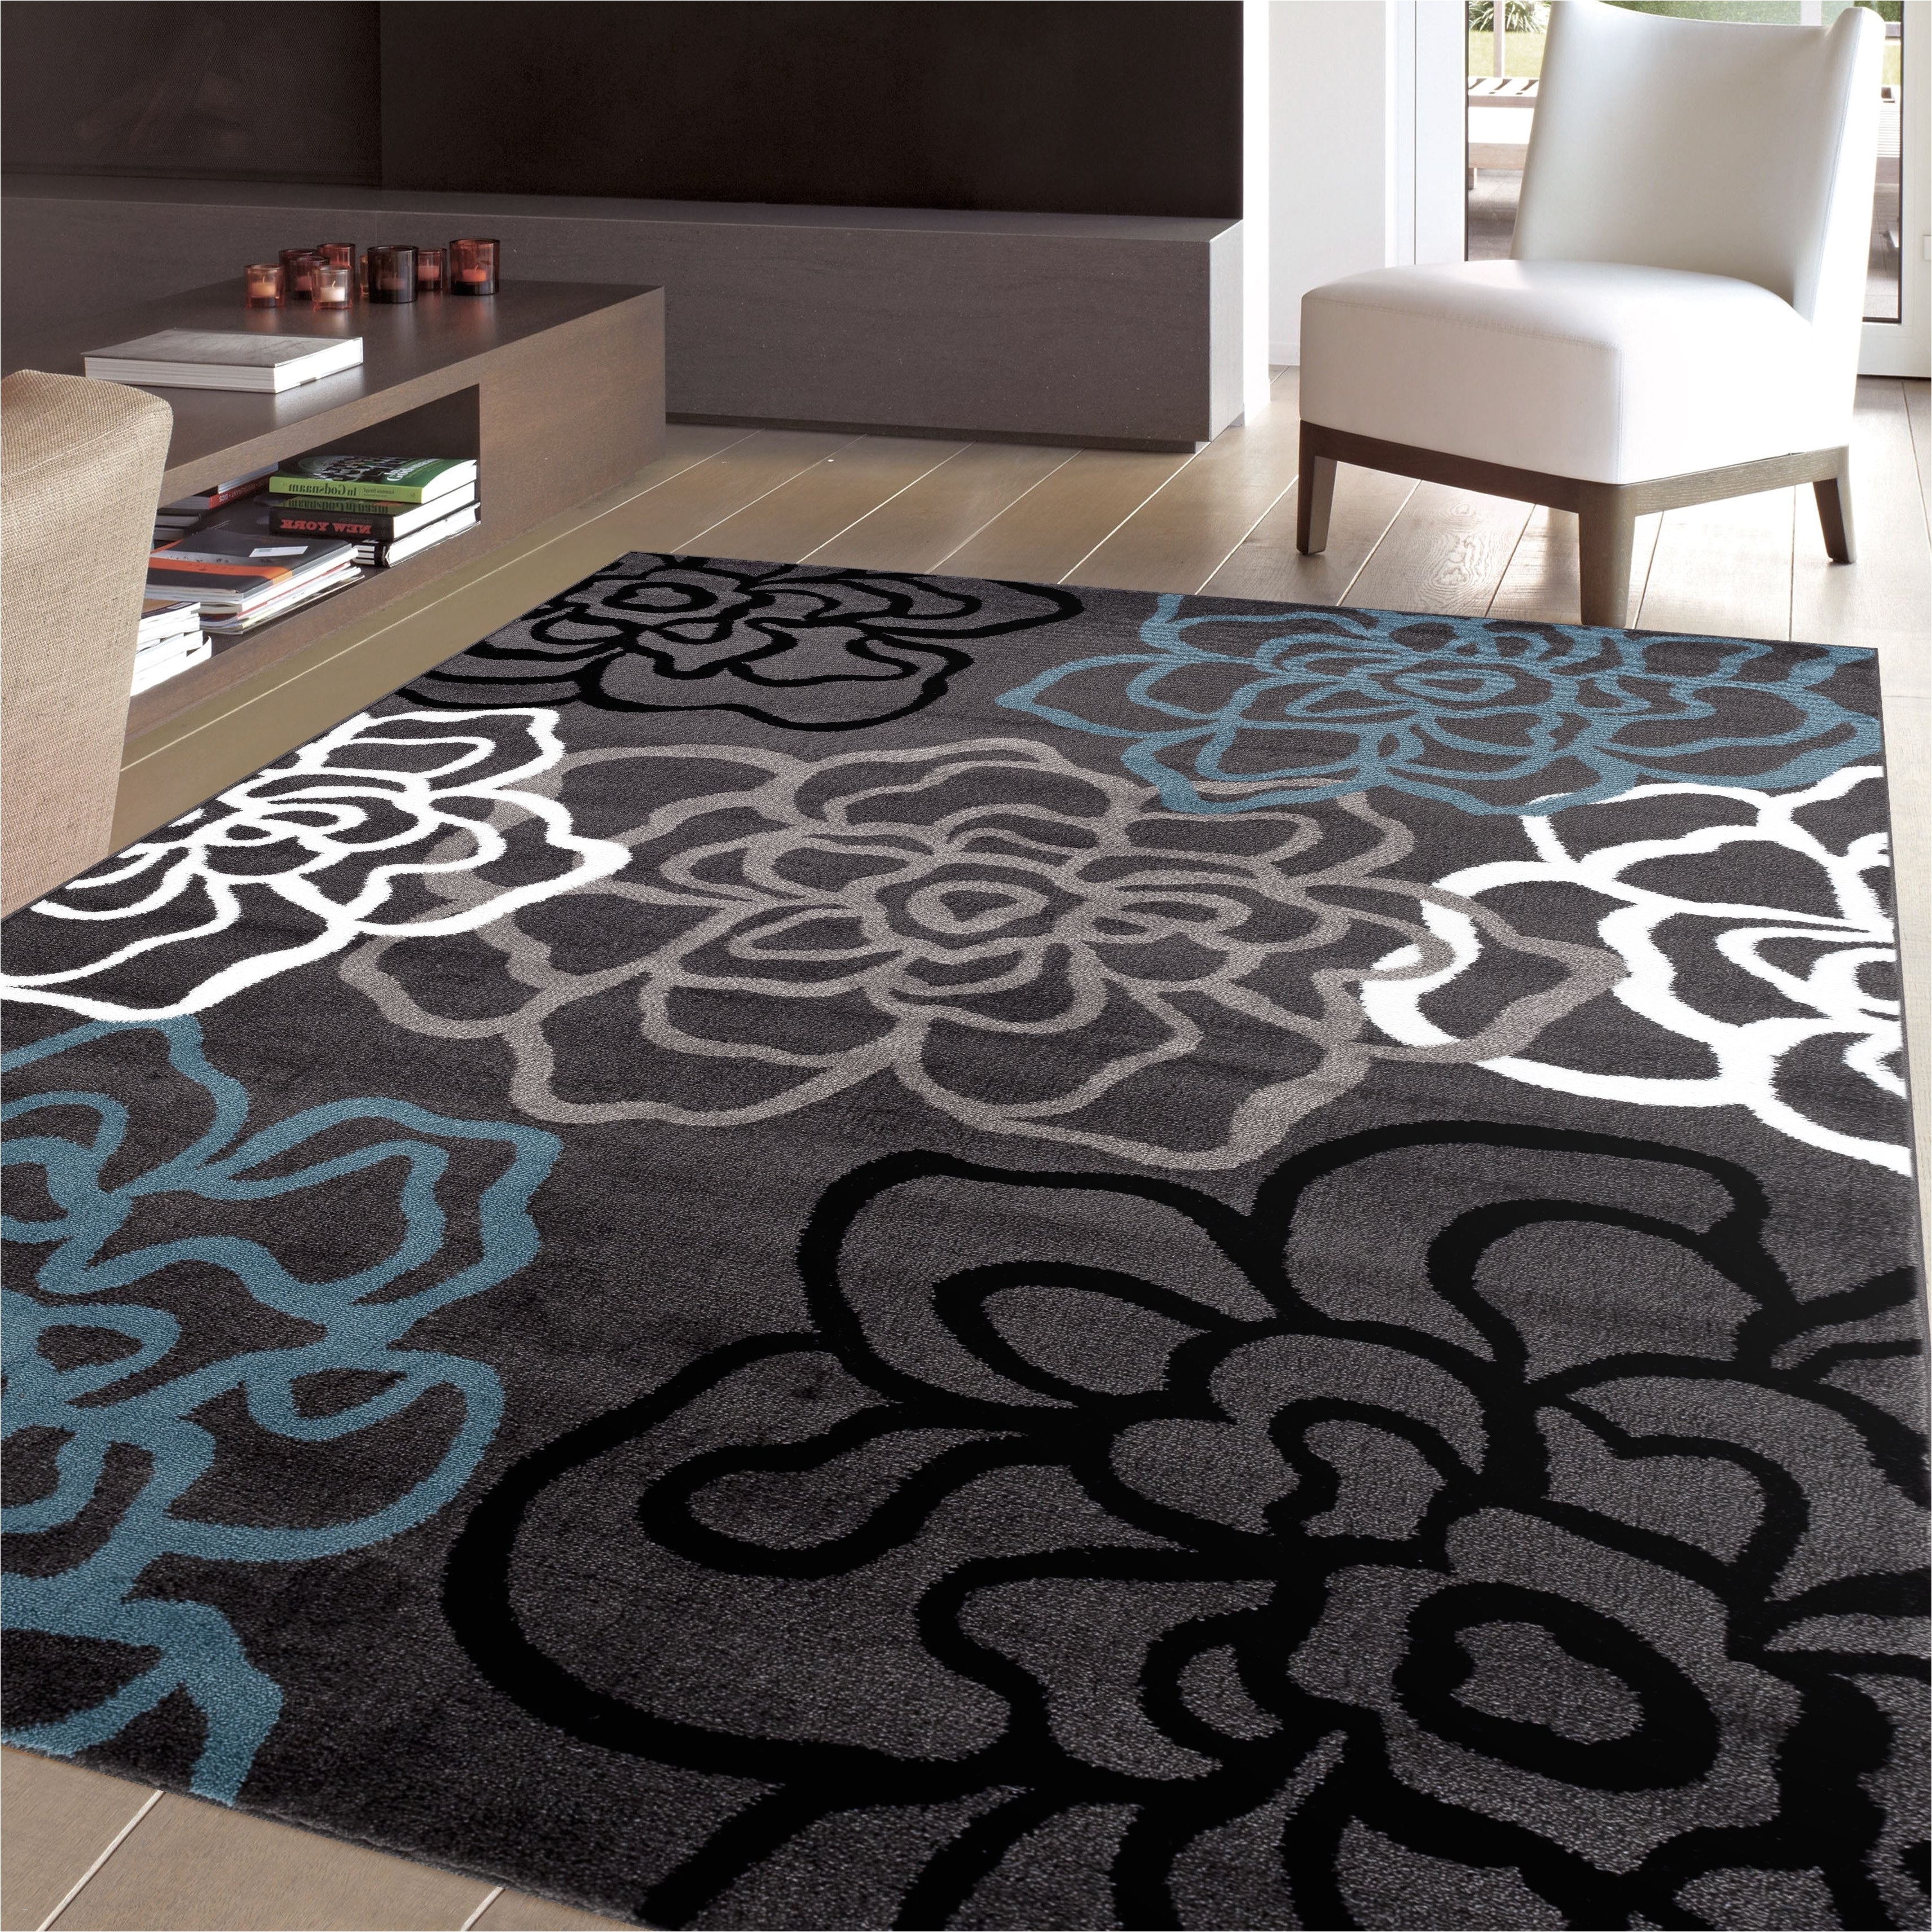 12 x 12 outdoor rug inspirational new outdoor rug ikea outdoor